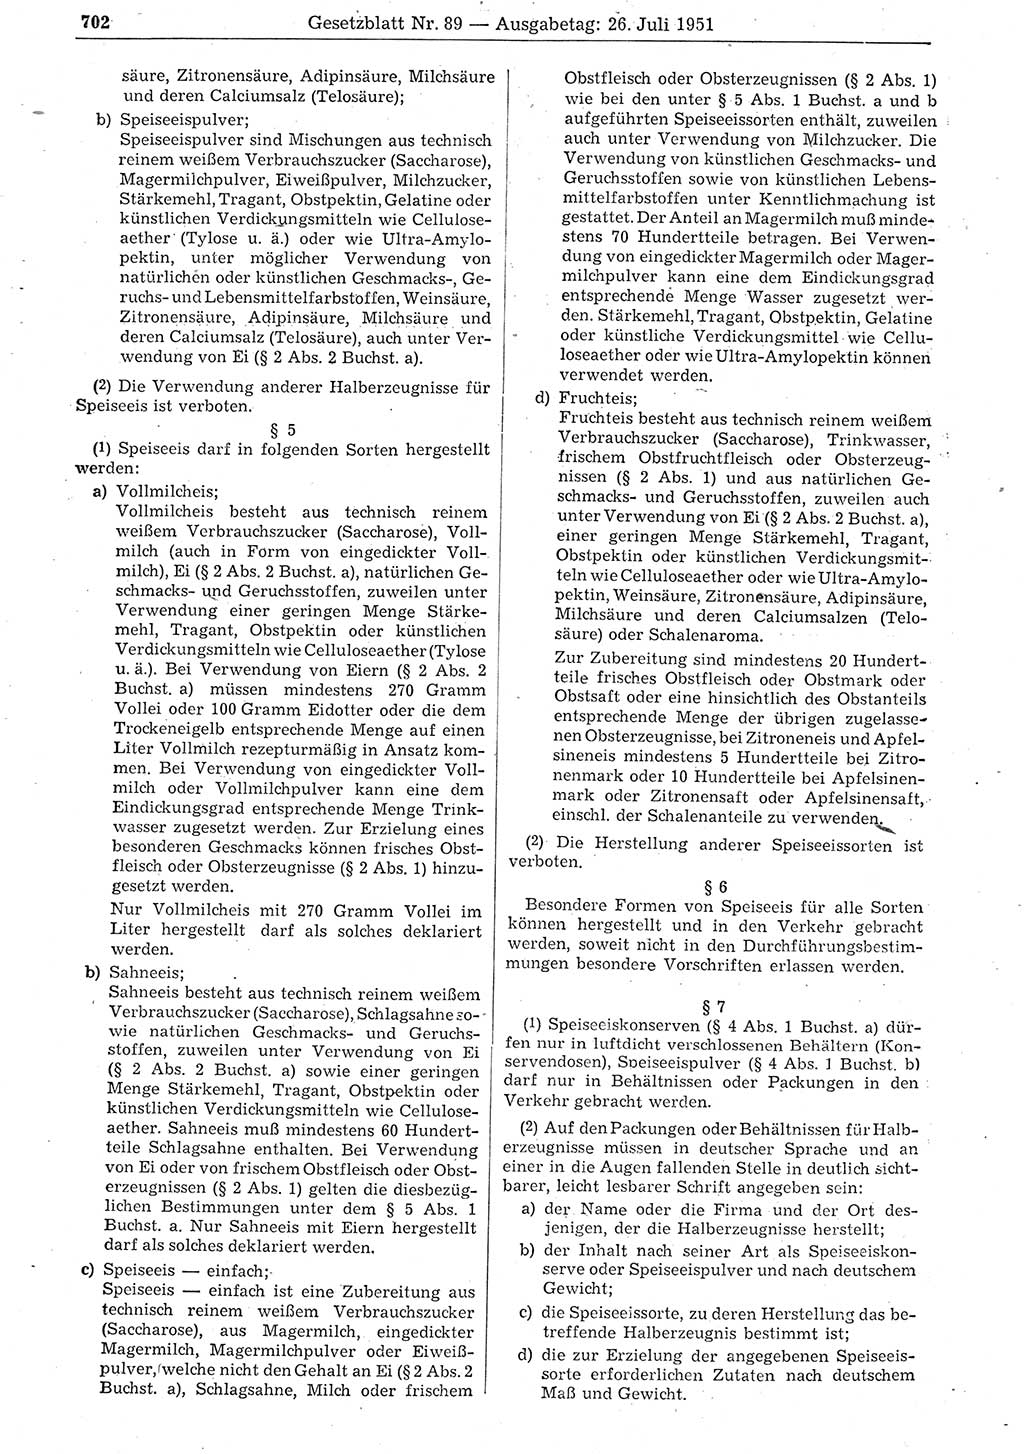 Gesetzblatt (GBl.) der Deutschen Demokratischen Republik (DDR) 1951, Seite 702 (GBl. DDR 1951, S. 702)